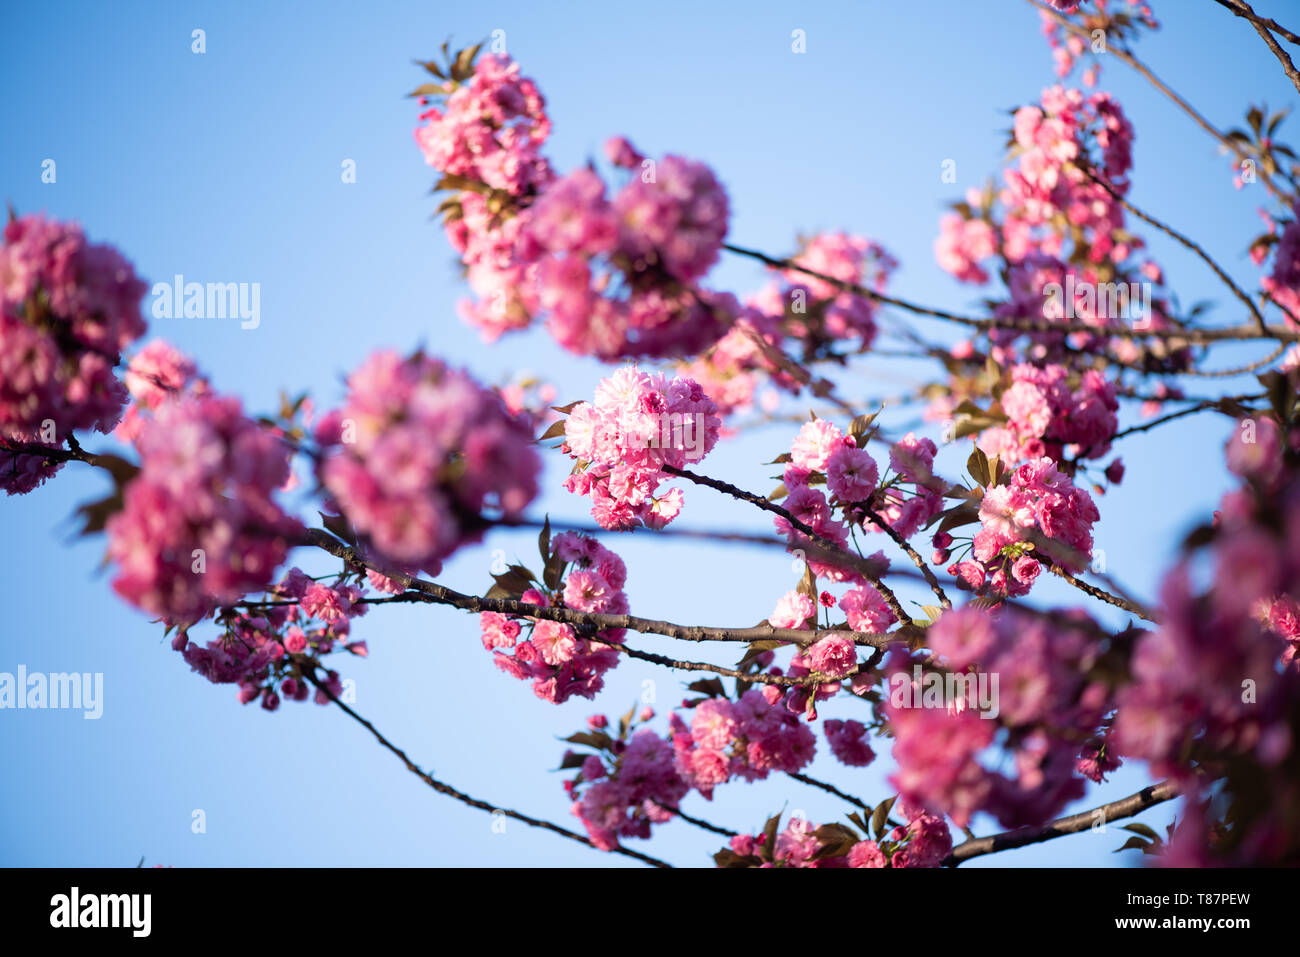 Washington, DC - Die jährliche Blüte tausender Kirschbäume rund um und in der Nähe von Denkmälern des Tidal Basin in Washington DC ist eine wichtige Touristenattraktion. Die Blüte ist nur flüchtig, und der genaue Zeitpunkt ändert sich von Jahr zu Jahr je nach Wetter in den Monaten bis zu ihr. Stockfoto